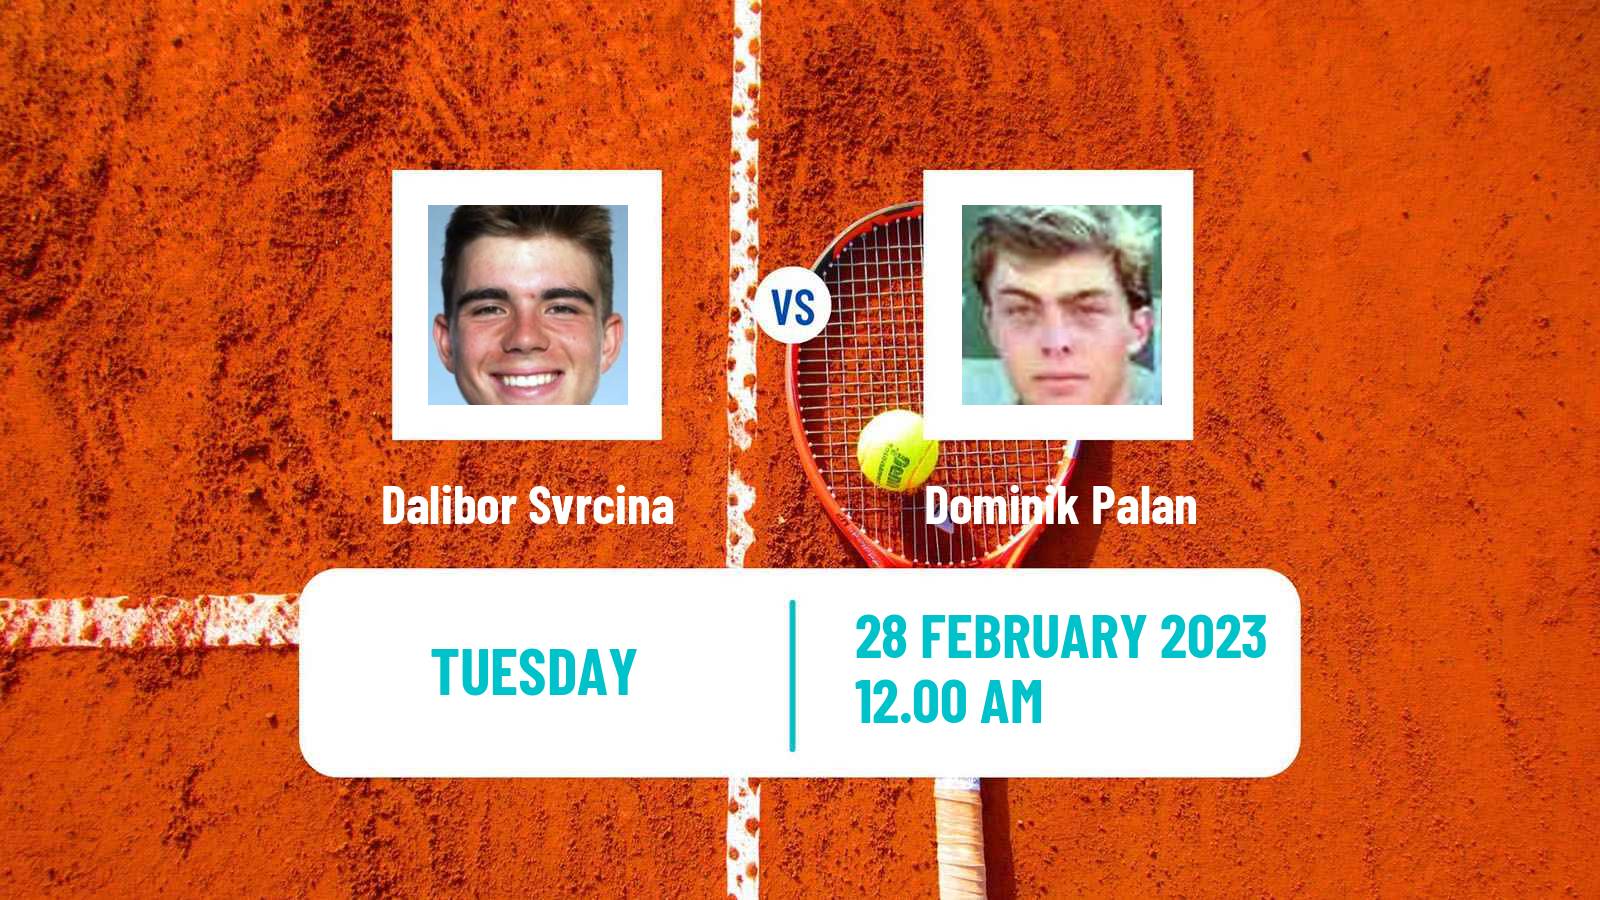 Tennis ATP Challenger Dalibor Svrcina - Dominik Palan